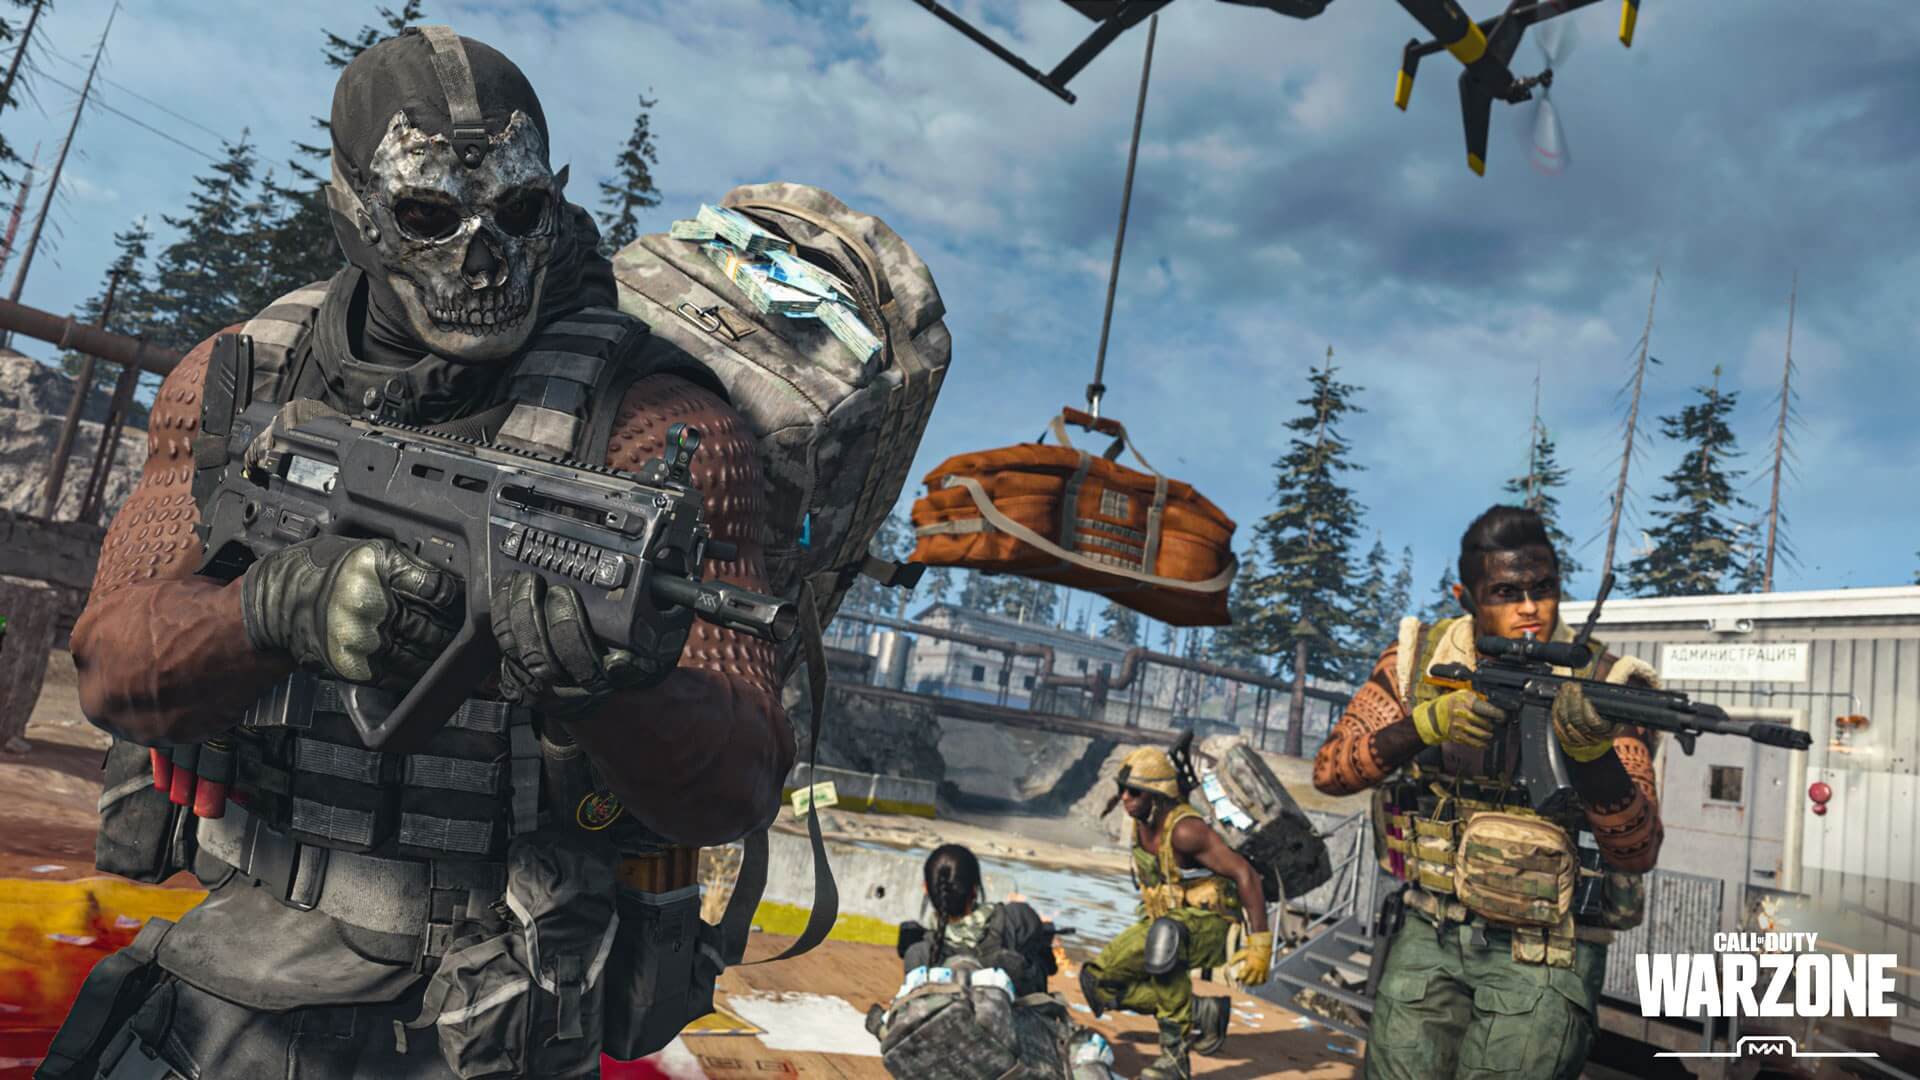 Estos son los requisitos oficiales para jugar a Call of Duty: Warzone Mobile